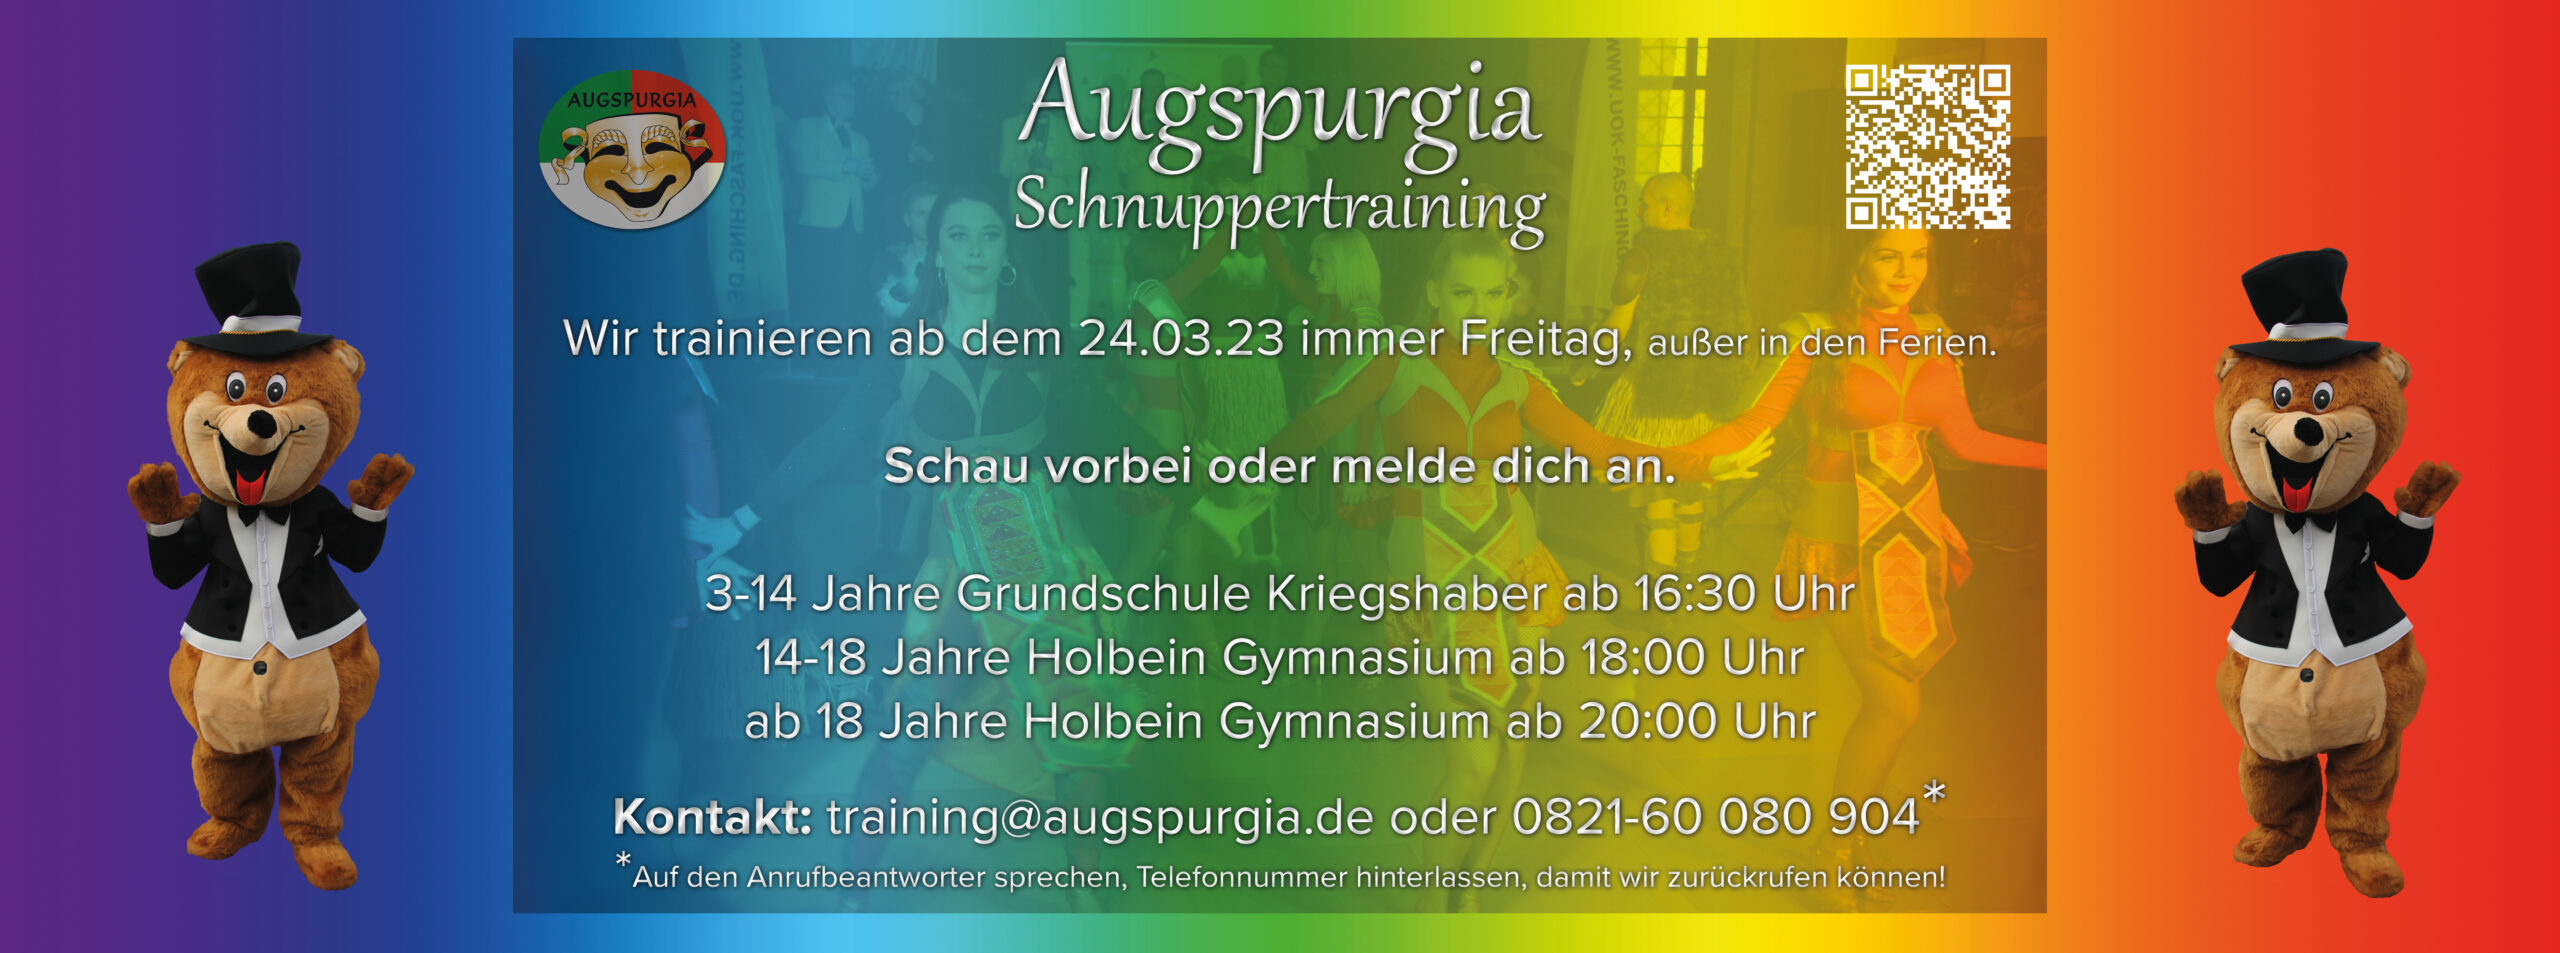 Augspurgia Schnuppertraining Banner